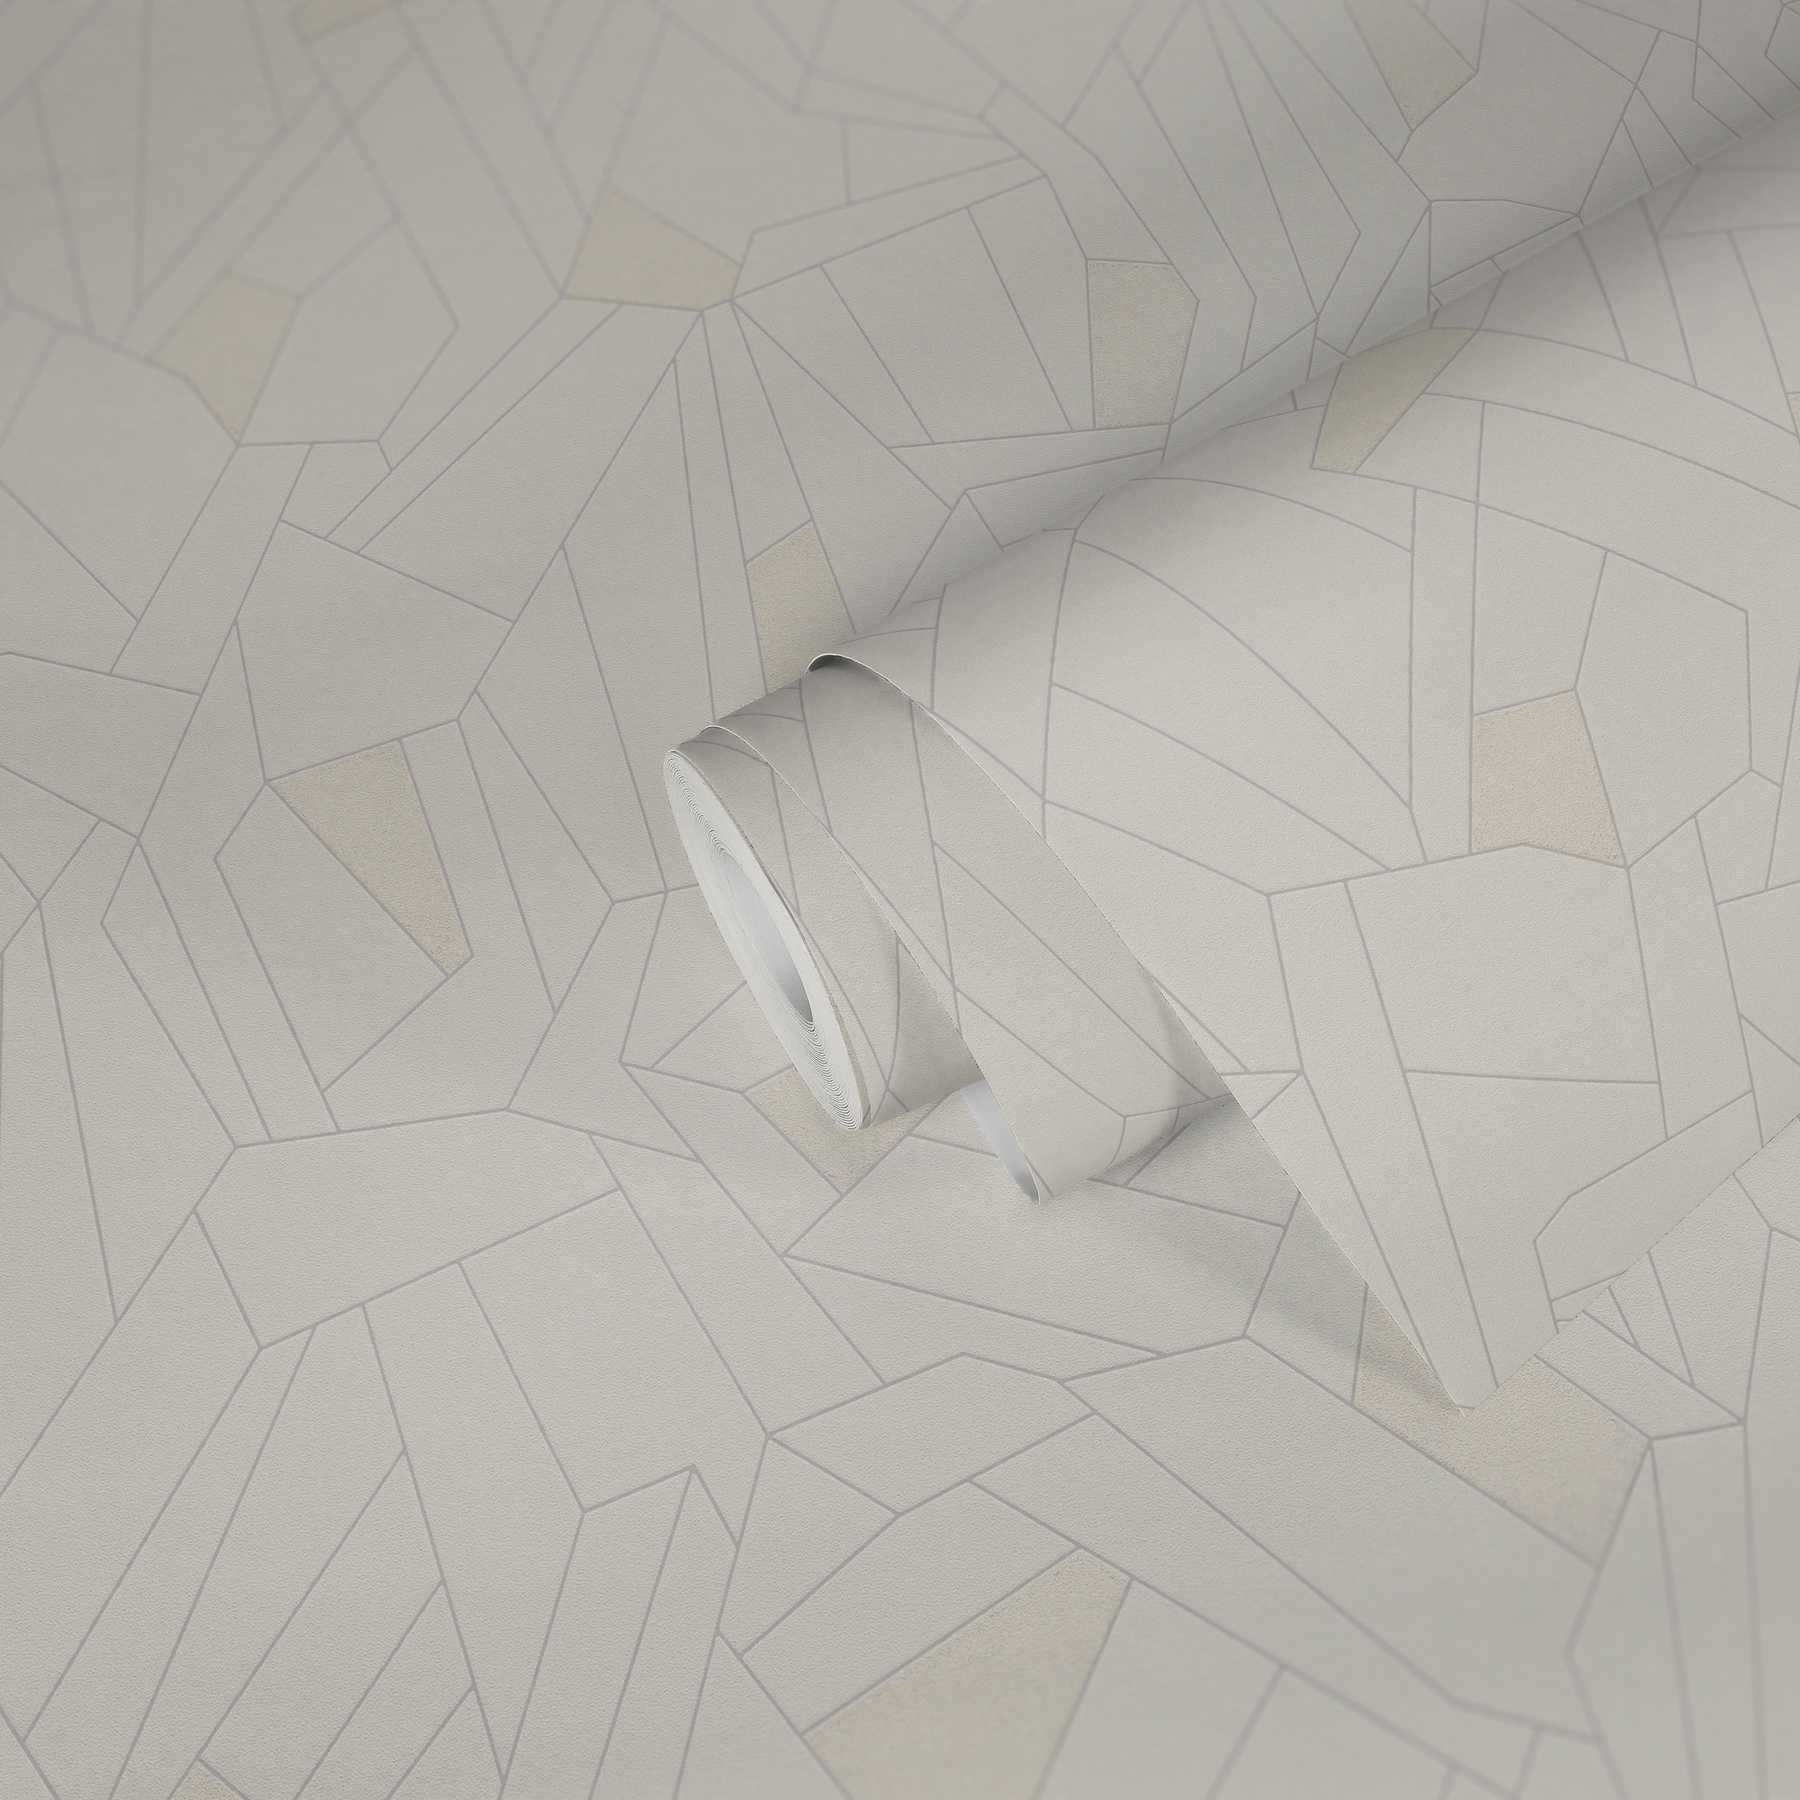             Carta da parati in tessuto non tessuto con linee ed effetto glitter - crema, beige, grigio
        